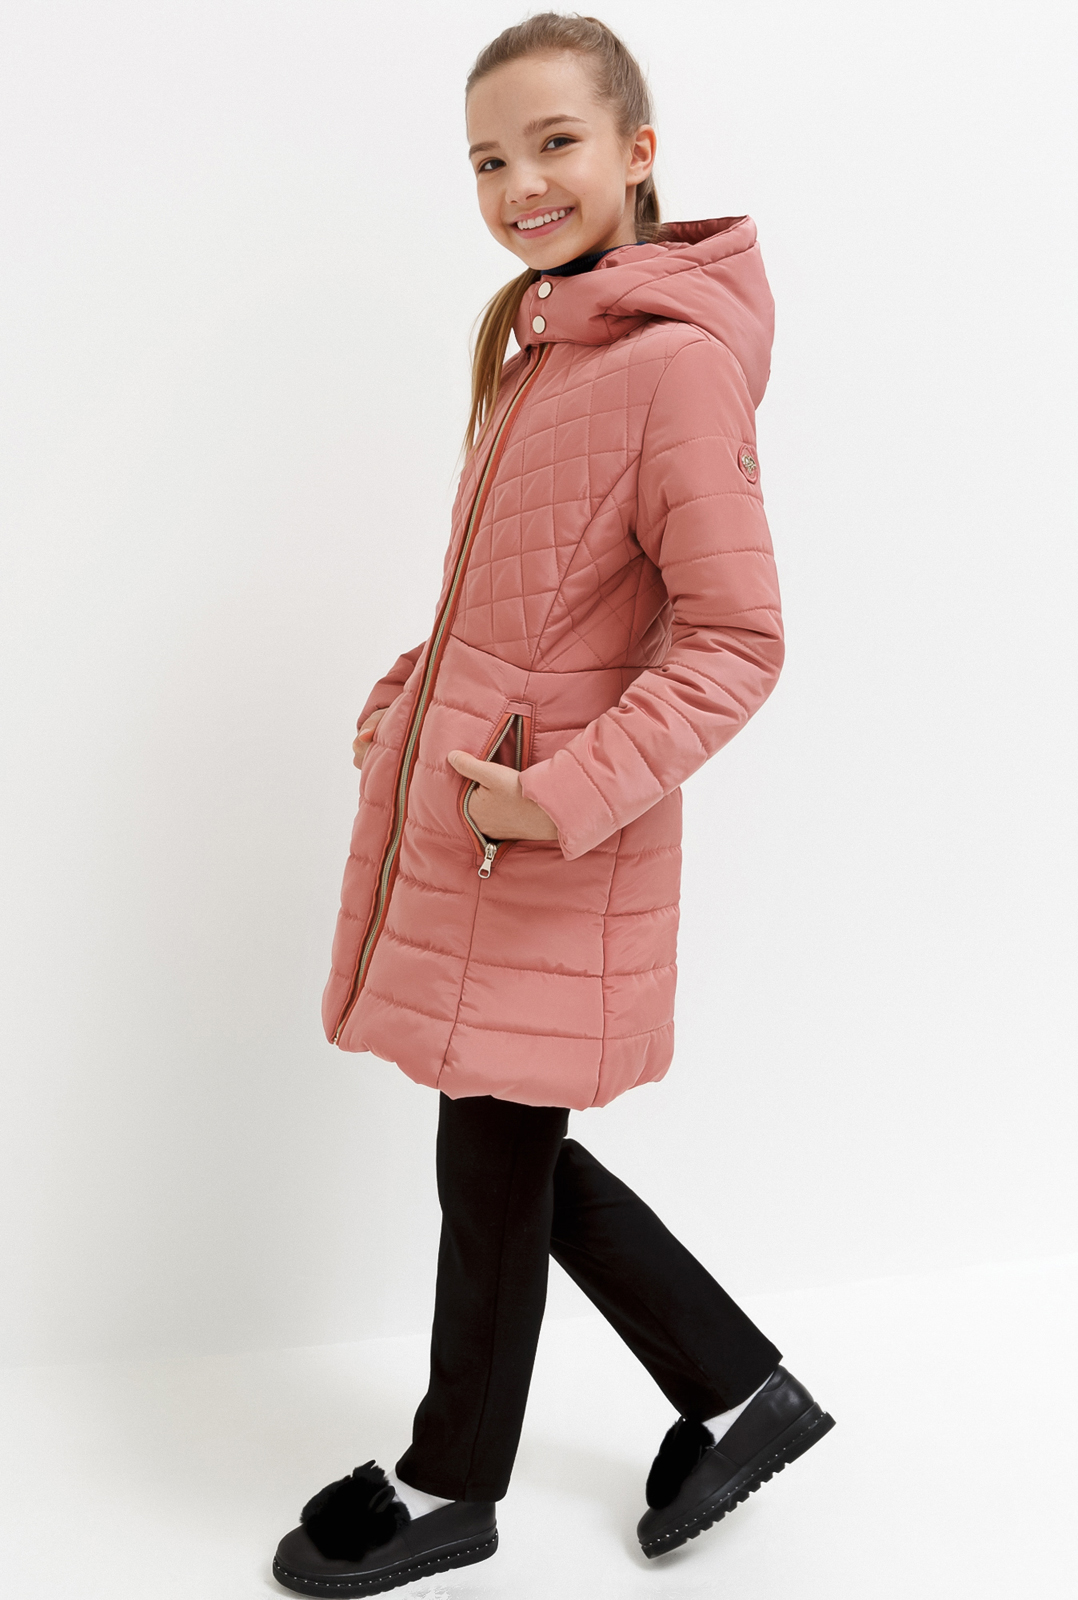 Пальто для девочки Acoola Zimia, цвет: светло-розовый. 20240610006_3400. Размер 146